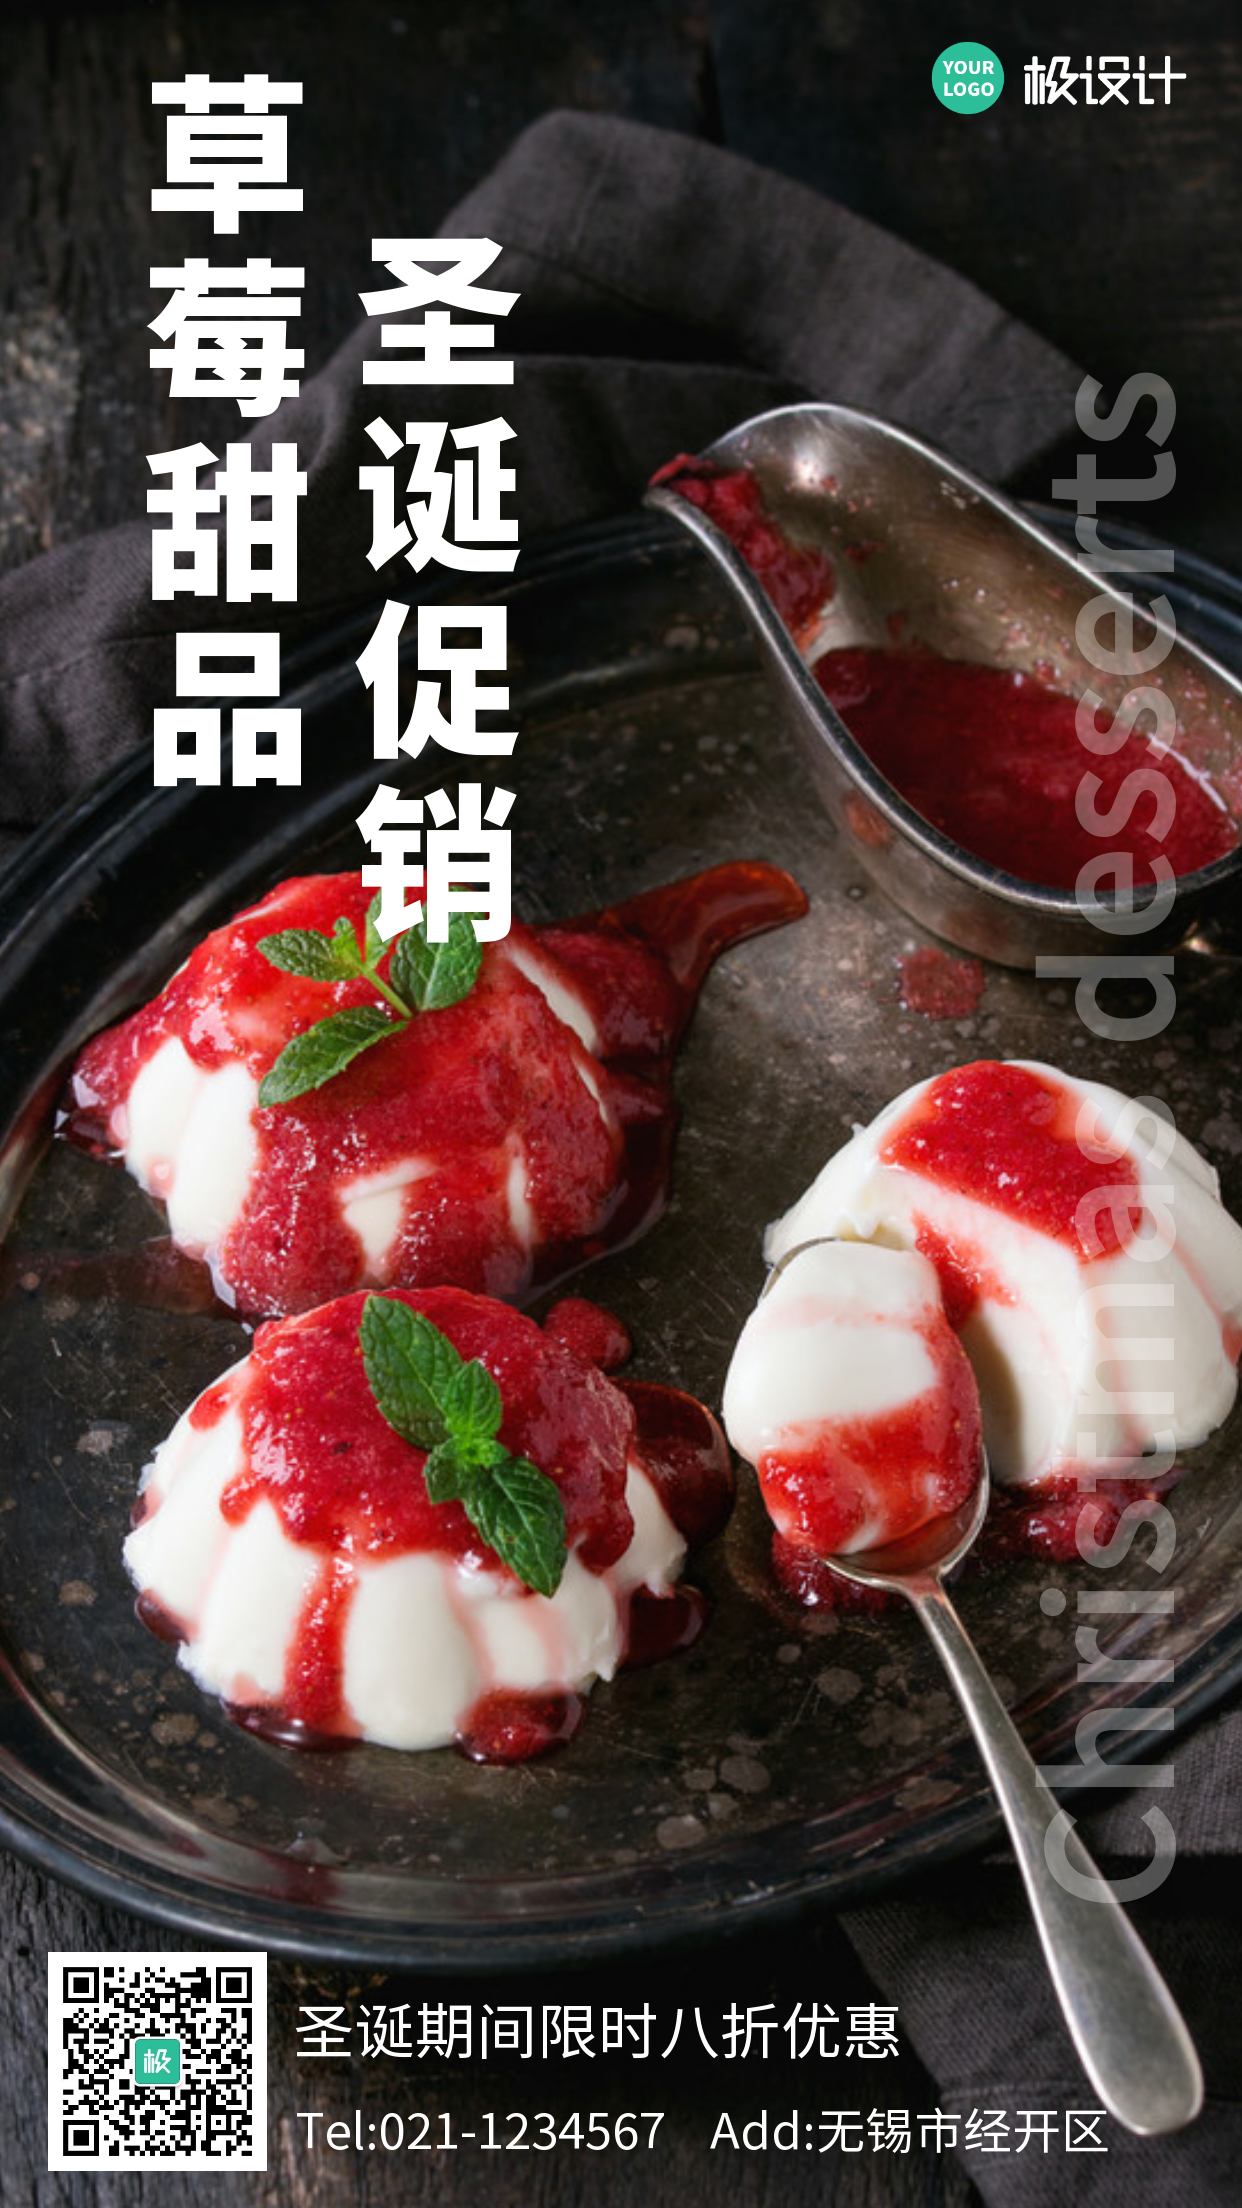 简约风格草莓甜品圣诞促销手机海报